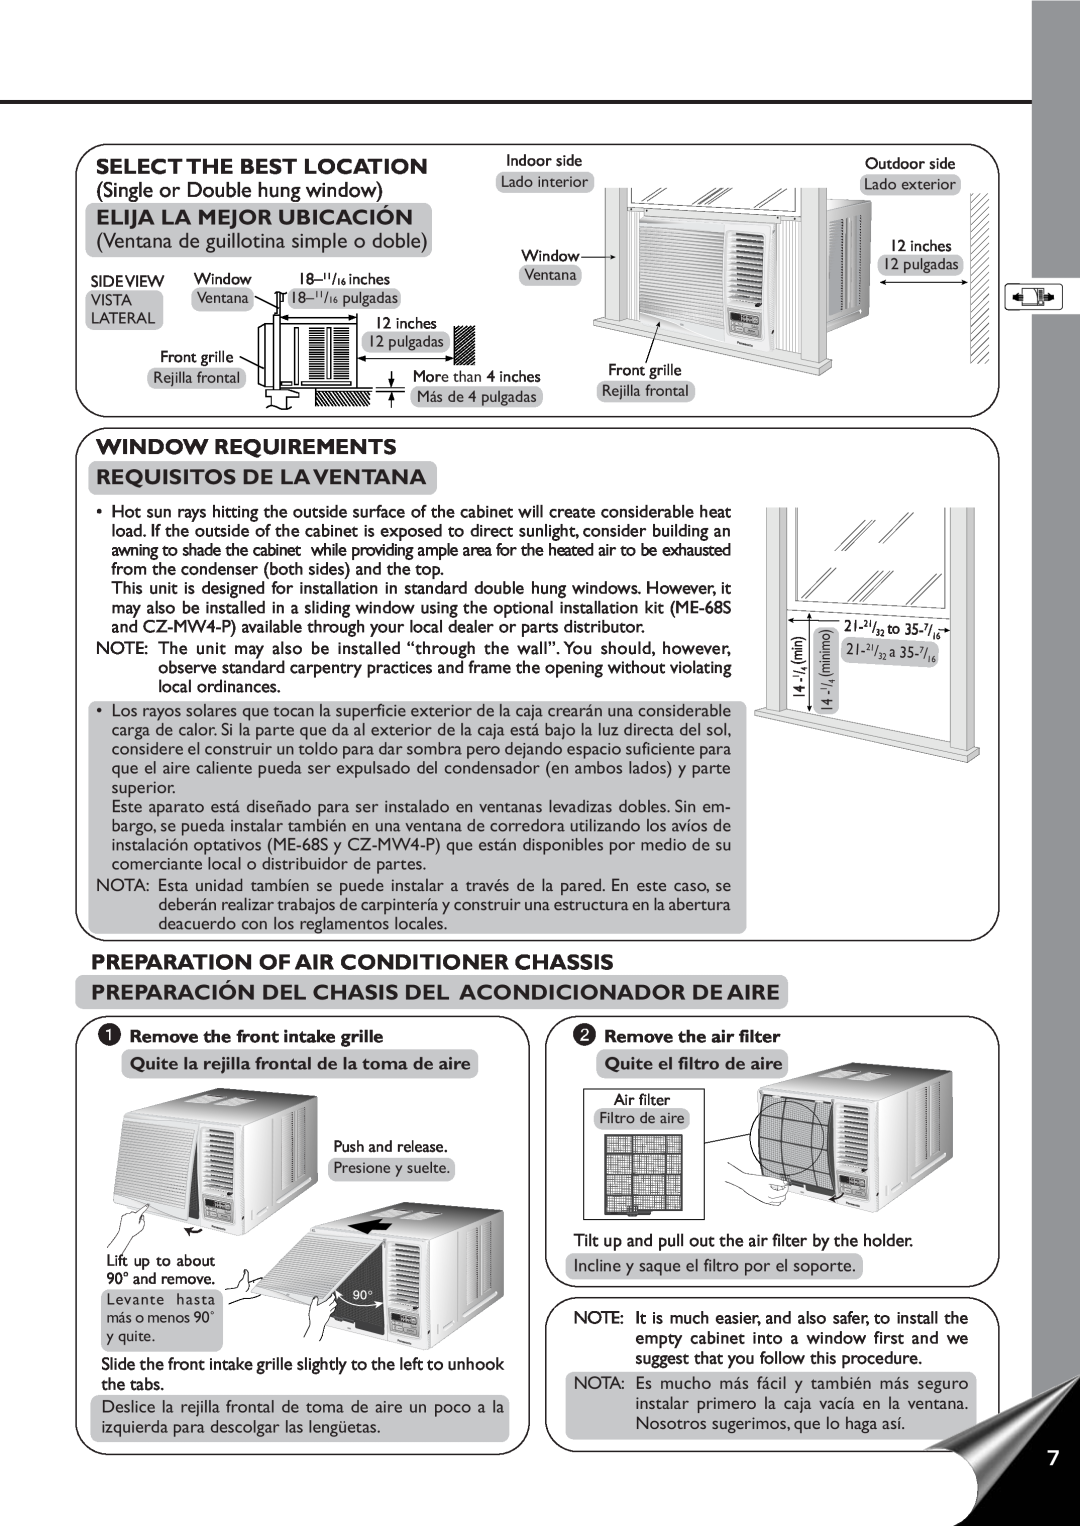 Panasonic CW-XC80YU manual Select The Best Location, Elija La Mejor Ubicación, Window Requirements Requisitos De La Ventana 